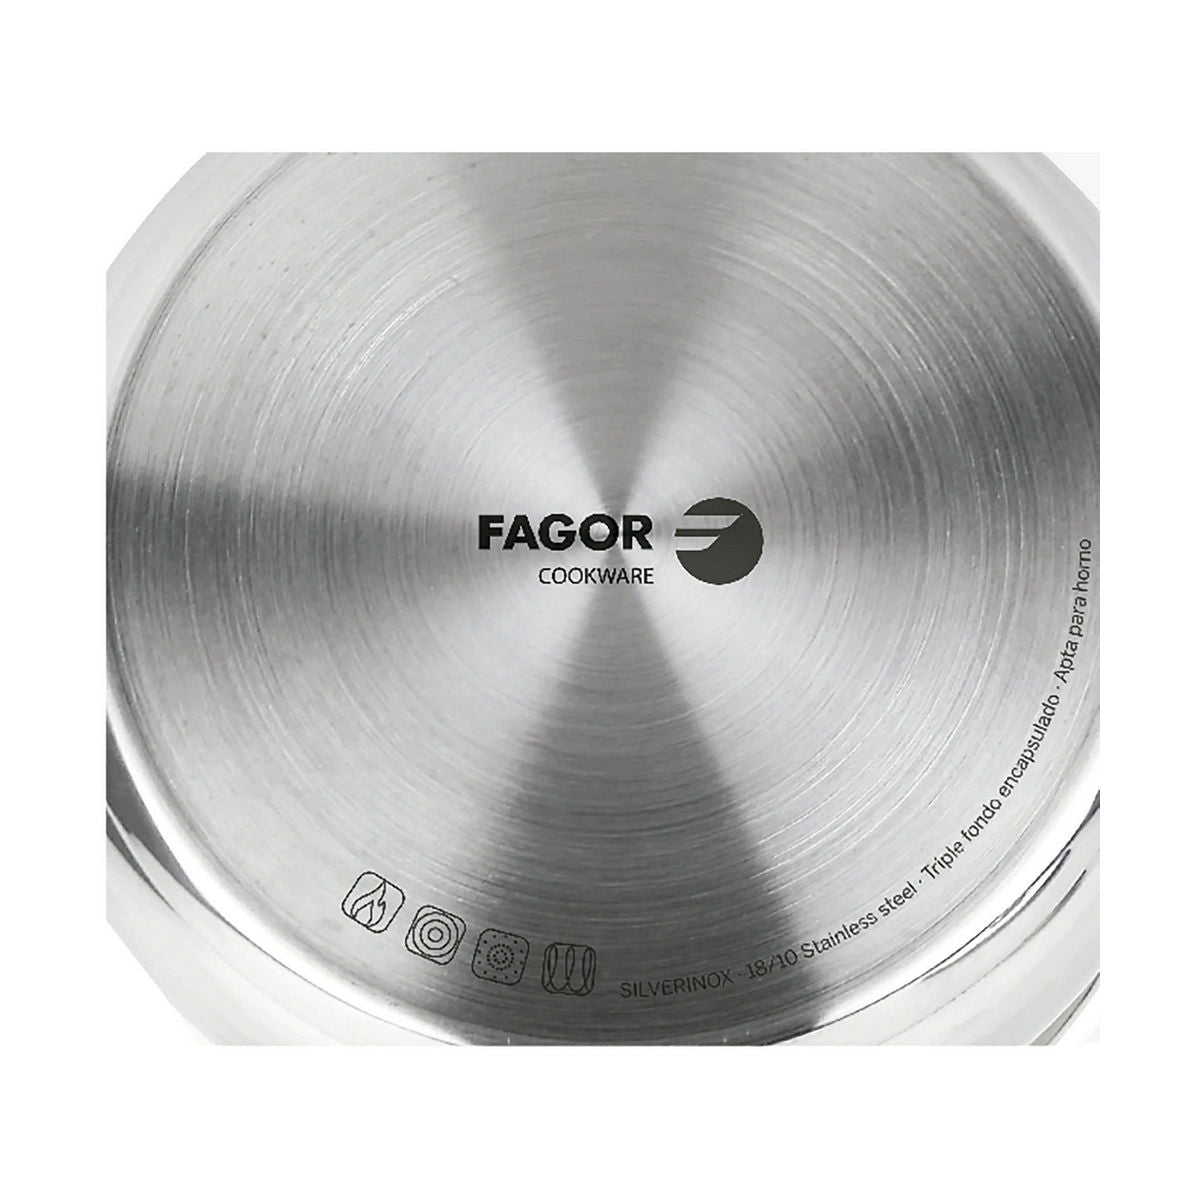 Kookpot FAGOR Roestvrij staal 18/10 Verchroomd (Ø 20 cm)